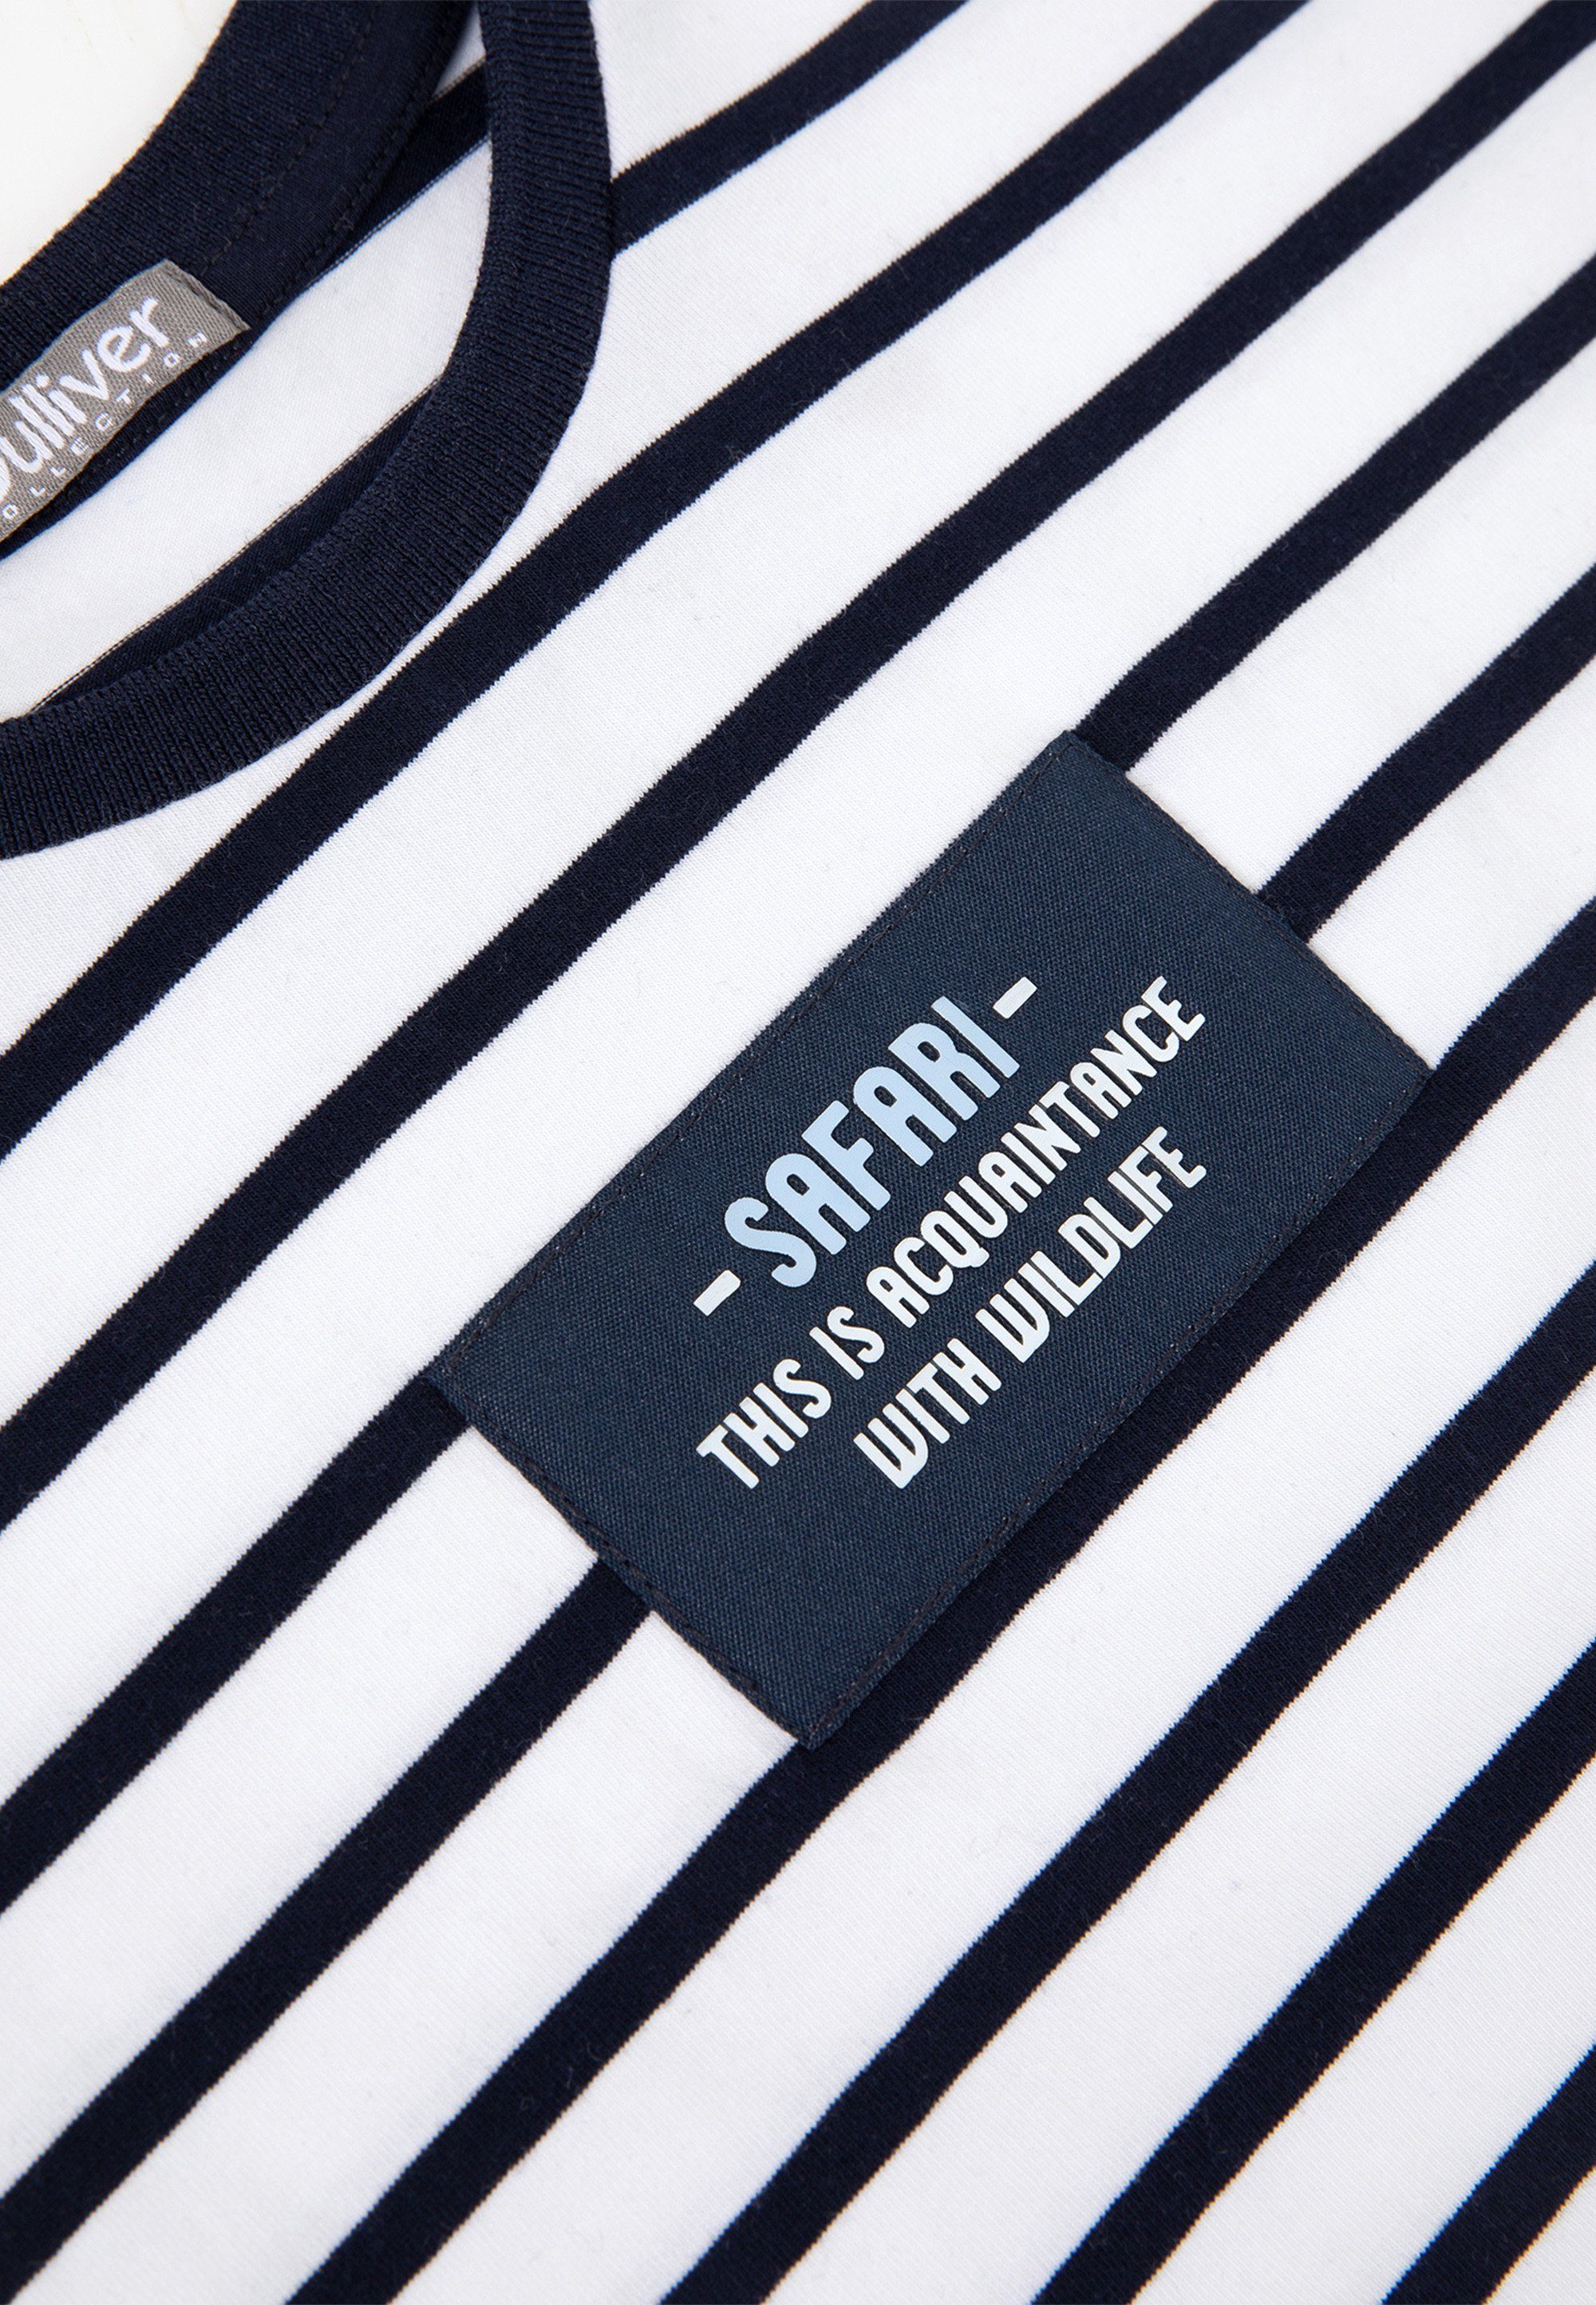 Gulliver T-Shirt im Streifen-Design tollen